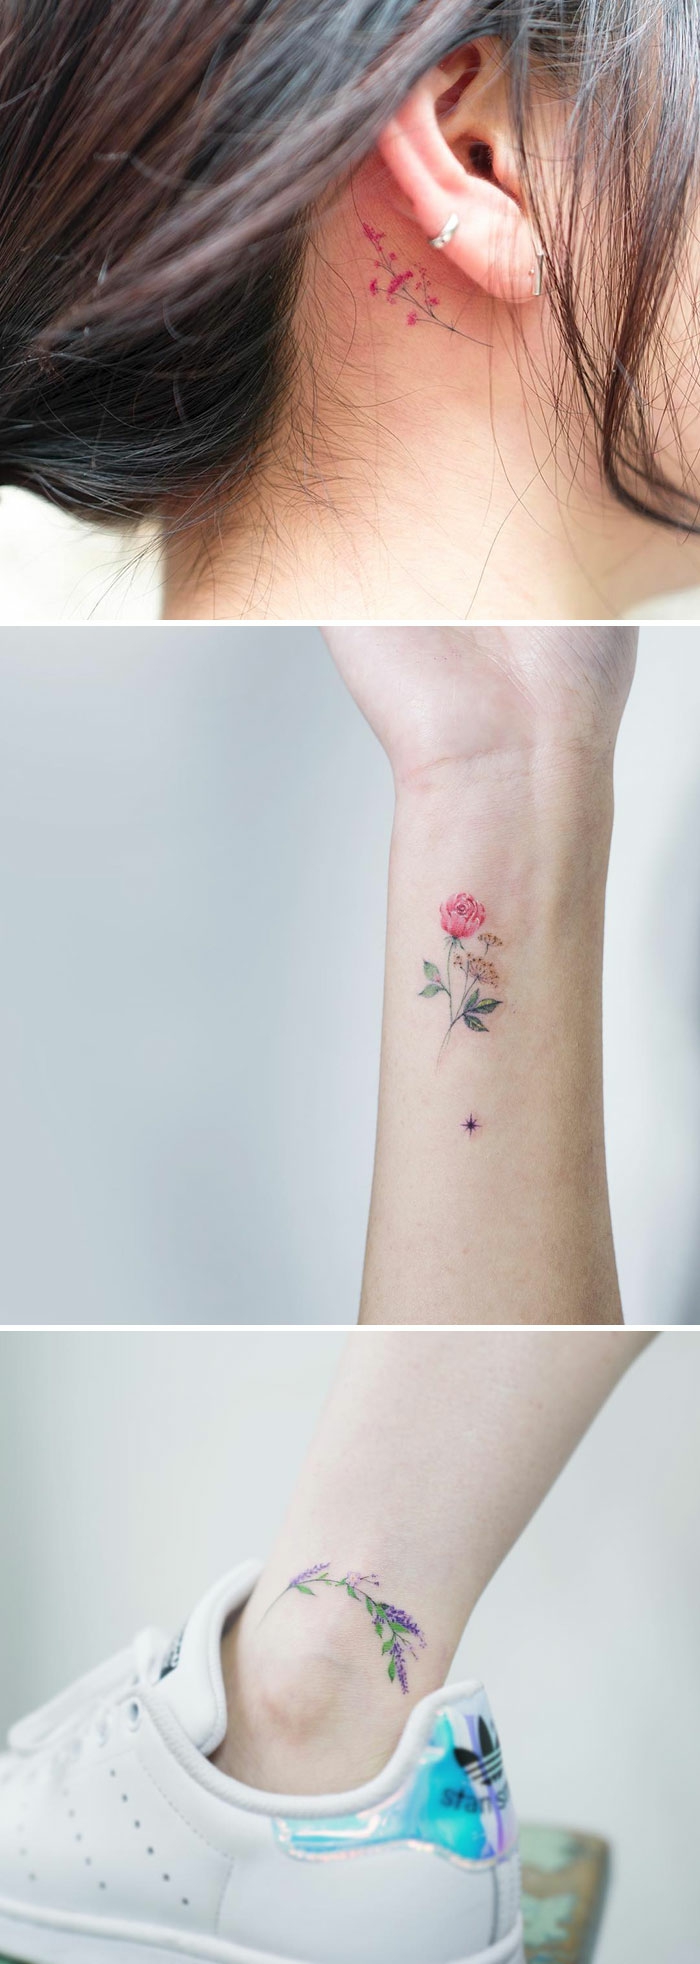 tattoo-fiori-tre-proposte-colorate-discrete-disegni-minimalisti